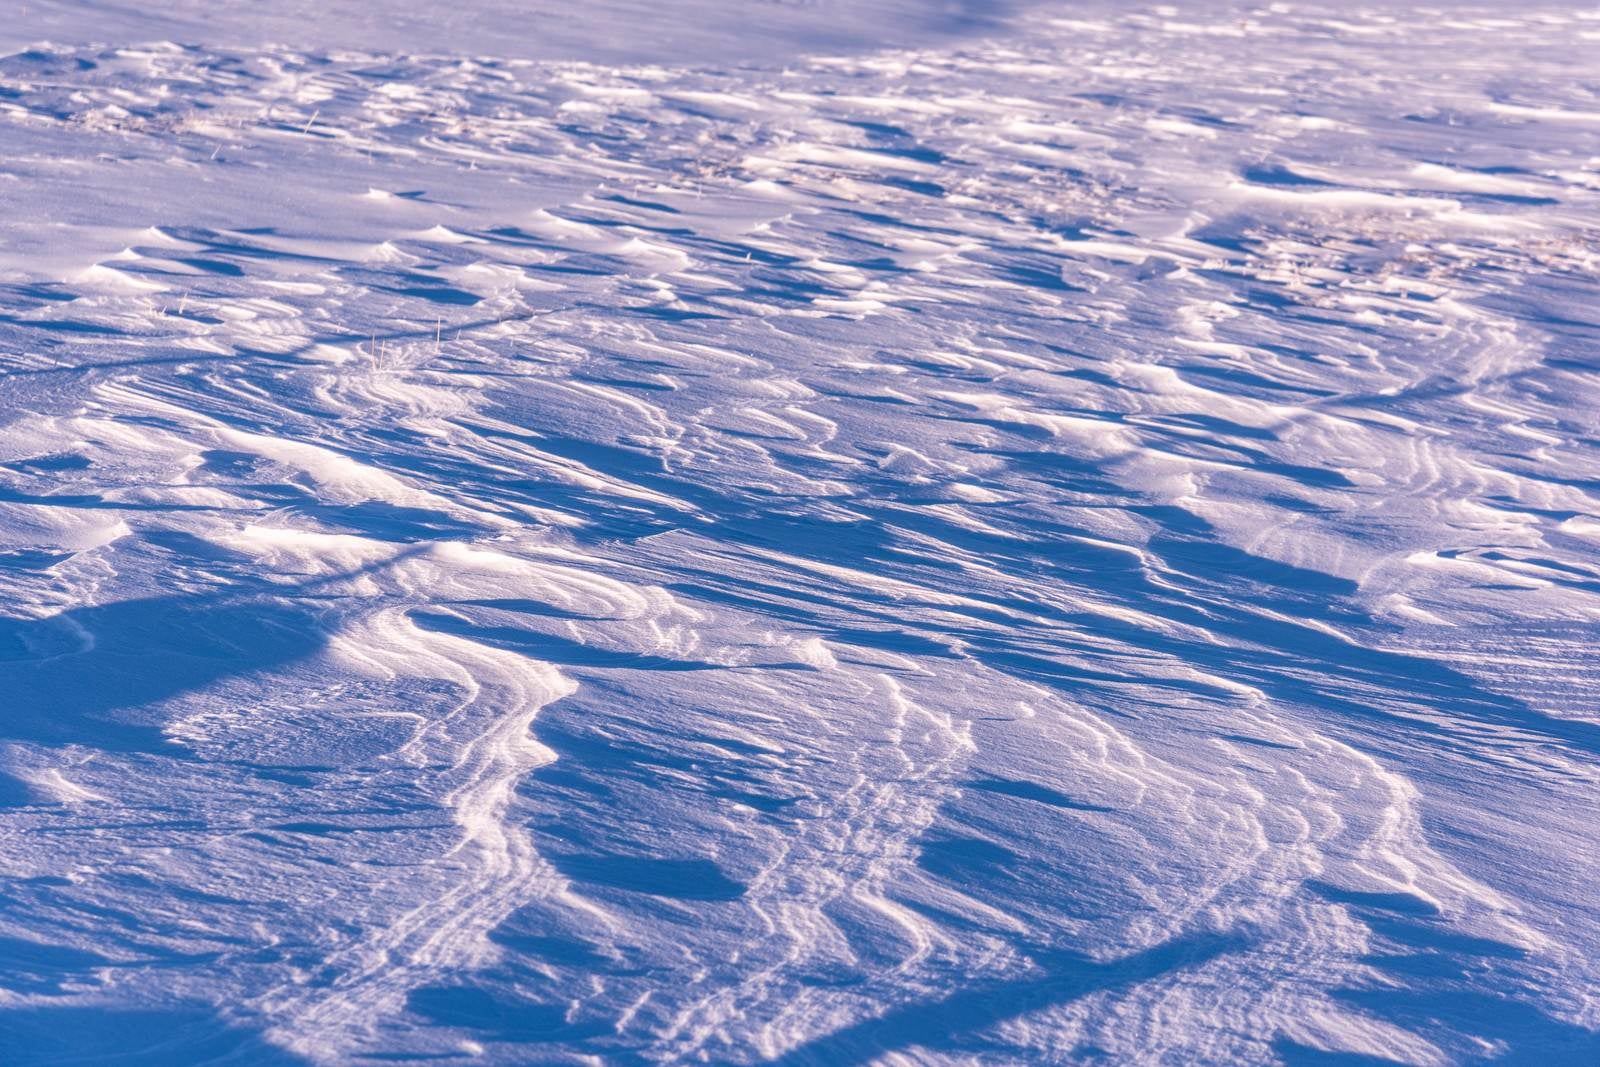 「雪原に残る風紋」の写真